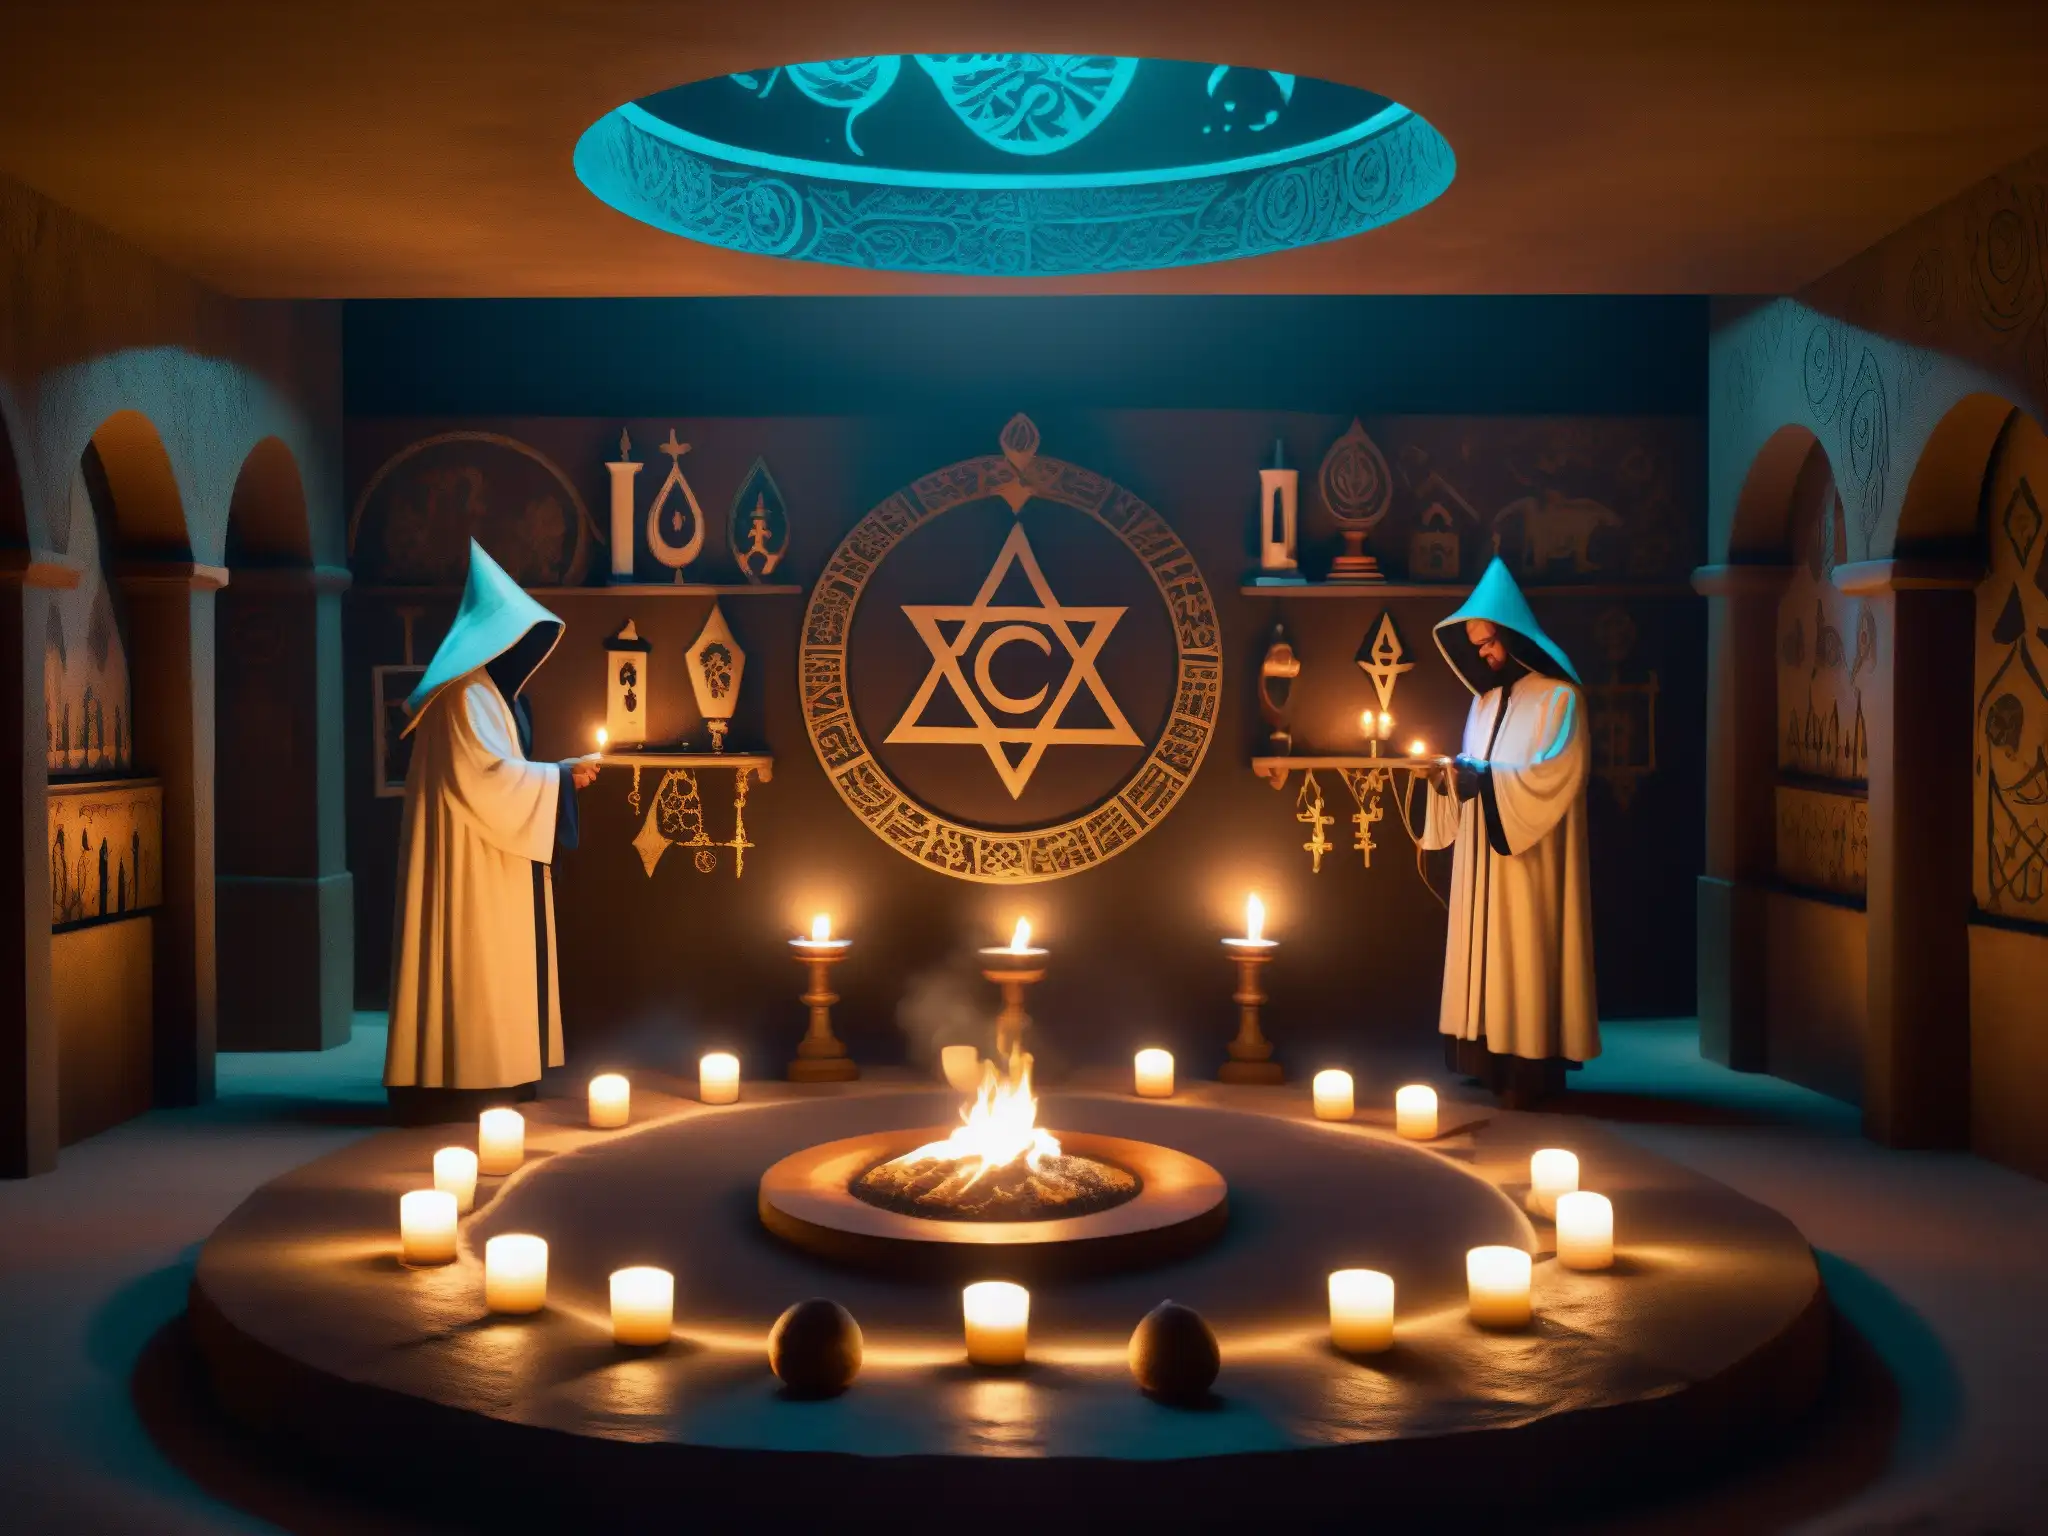 Un club bohemio envuelto en misterio: figuras encapuchadas realizan rituales secretos alrededor de un altar brillante, entre símbolos ocultos y velas